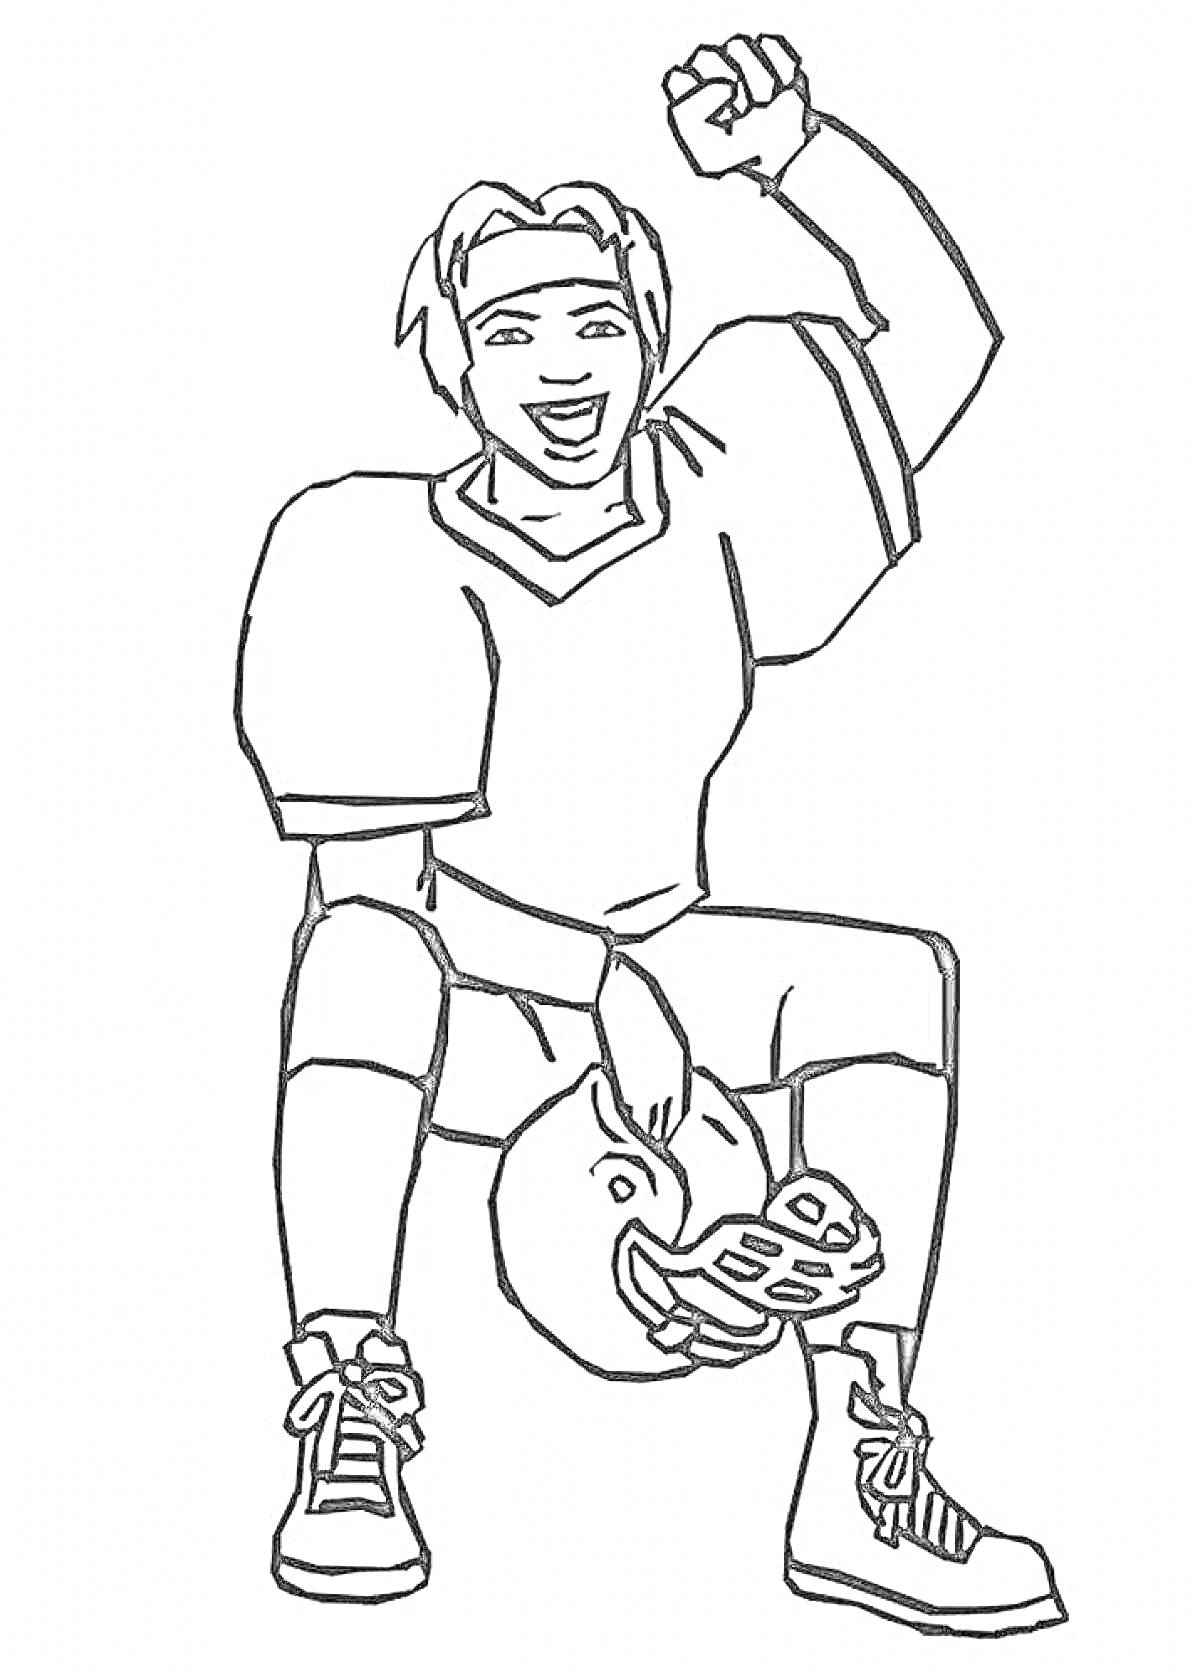 Раскраска Футболист в экипировке, сидящий с футбольным шлемом и поднятой рукой